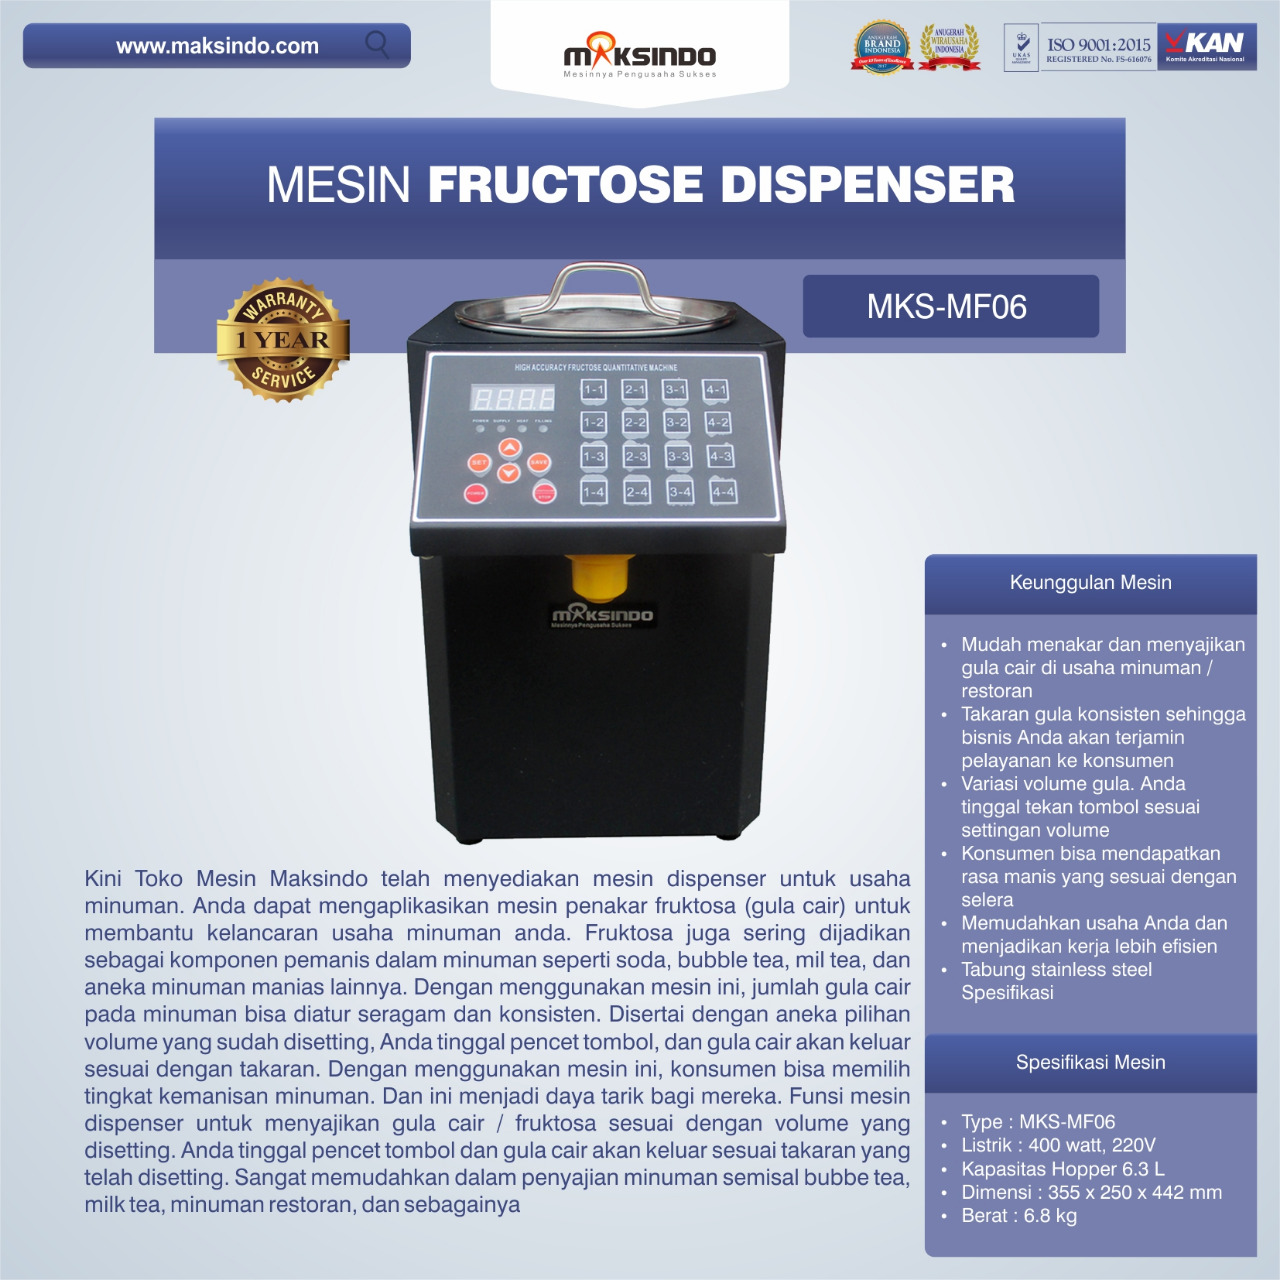 Jual Mesin Fructose Dispenser MKS-MF06 di Semarang